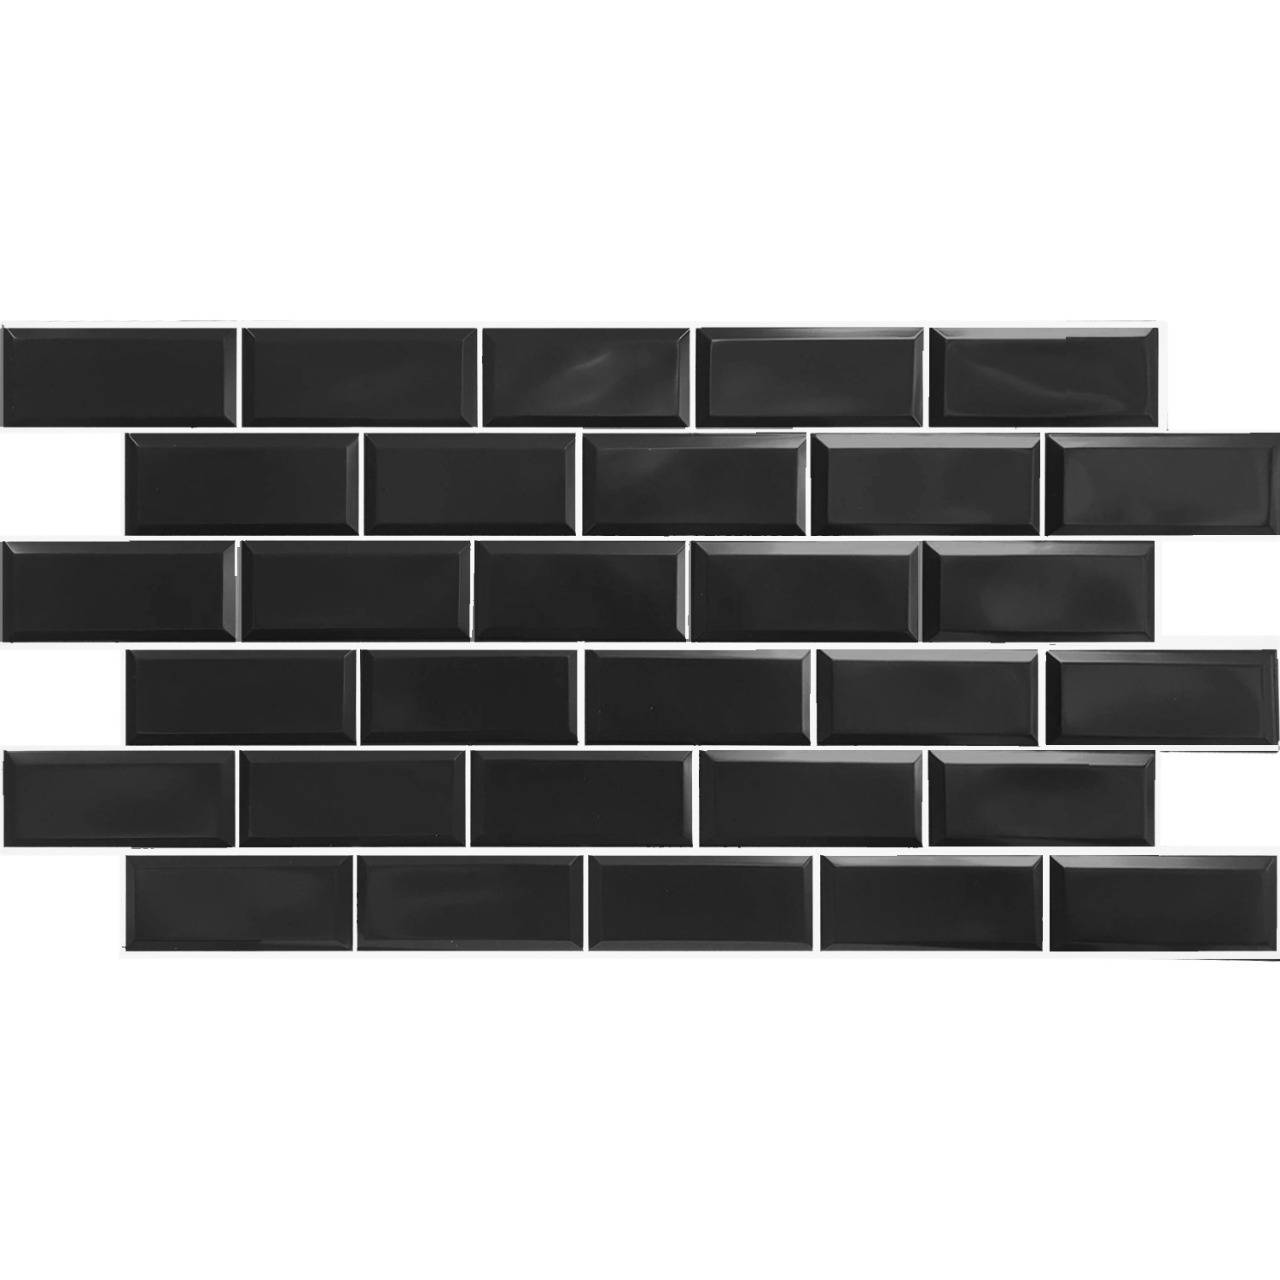 Пвх плитка черная. Панель декоративная блок черный, белый шов (0,966х0,484м). ПВХ панели для стен черные. Черная плитка на стене. Черная панель.